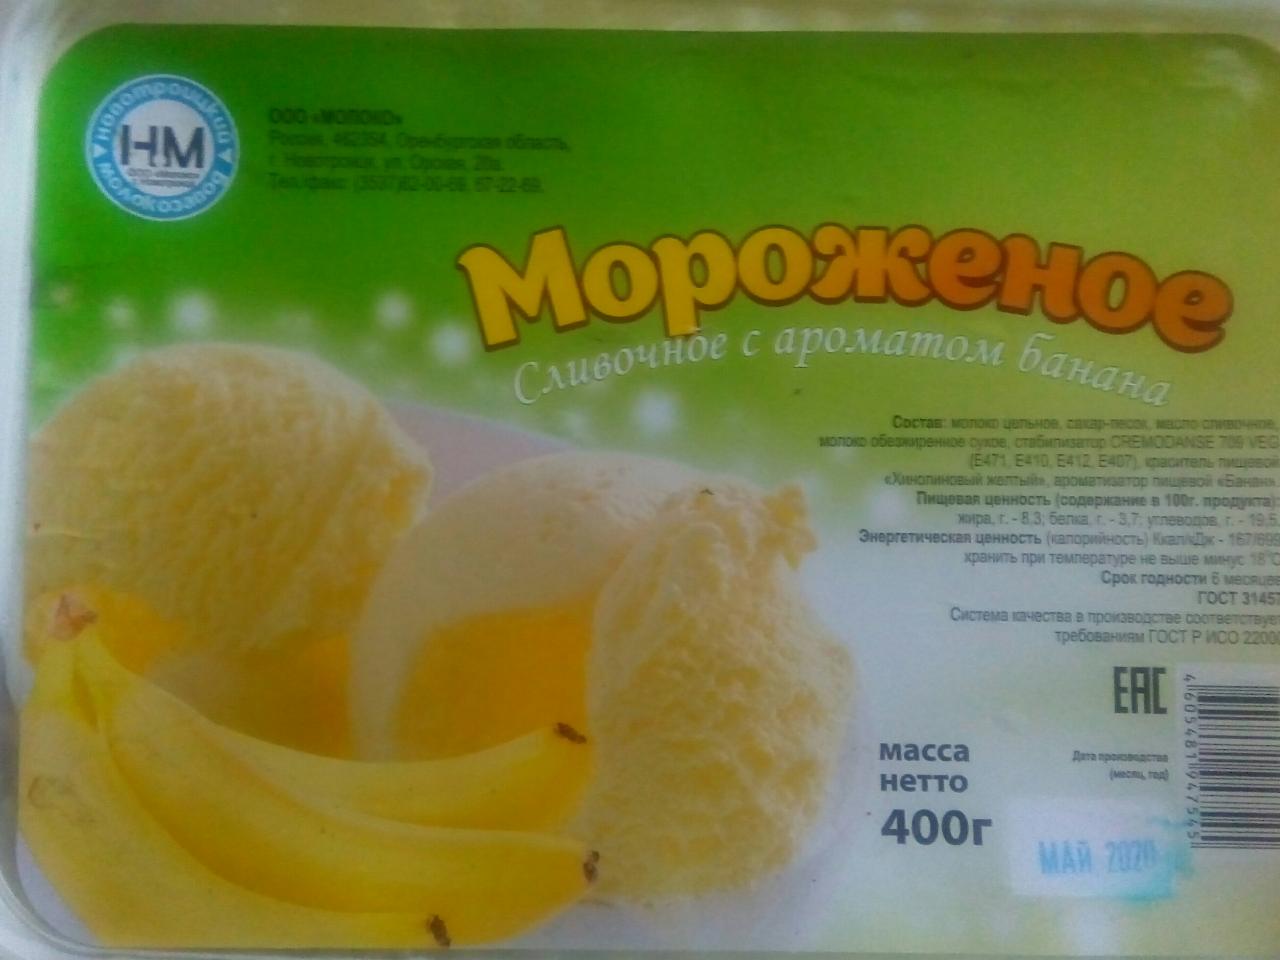 Фото - Мороженое сливочное с ароматом банана Новотроицкий молокозавод